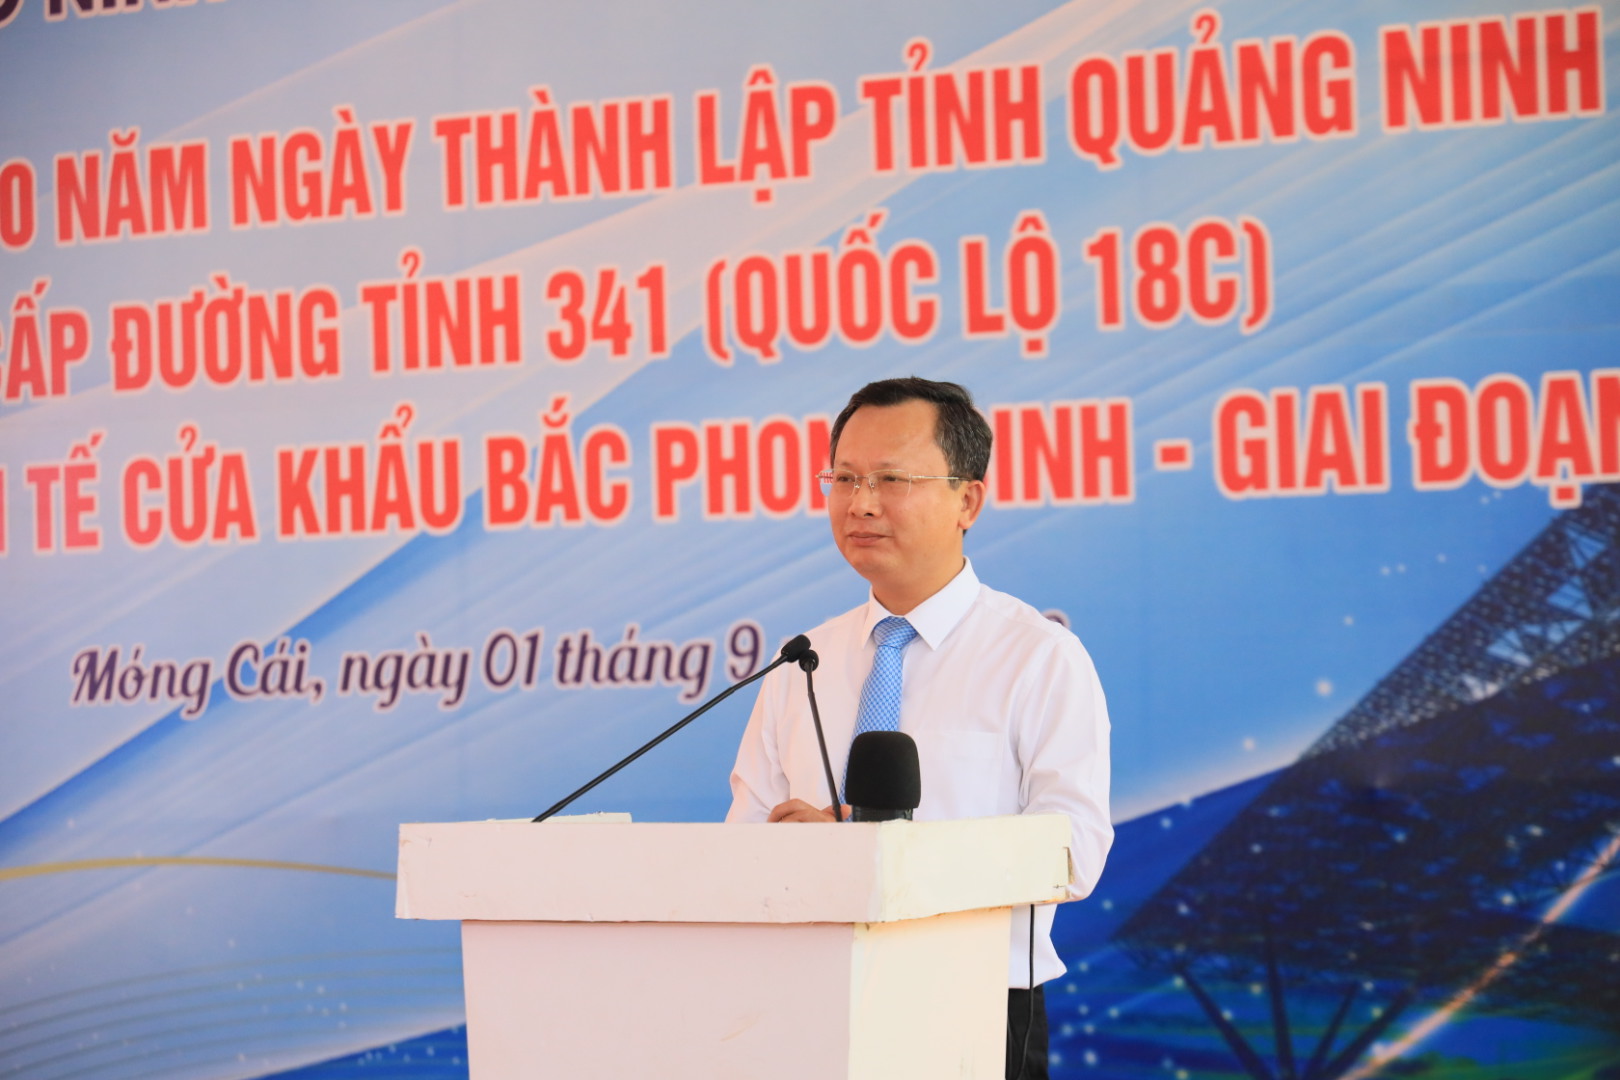 Ông Cao Tường Huy, Quyền Chủ tịch UBND tỉnh Quảng Ninh đánh giá cao nỗ lực của chủ đầu tư và các nhà thầu khi đưa Dự án vào sử dụng trước tiến độ đến 25%. Ảnh: Thu Lê.